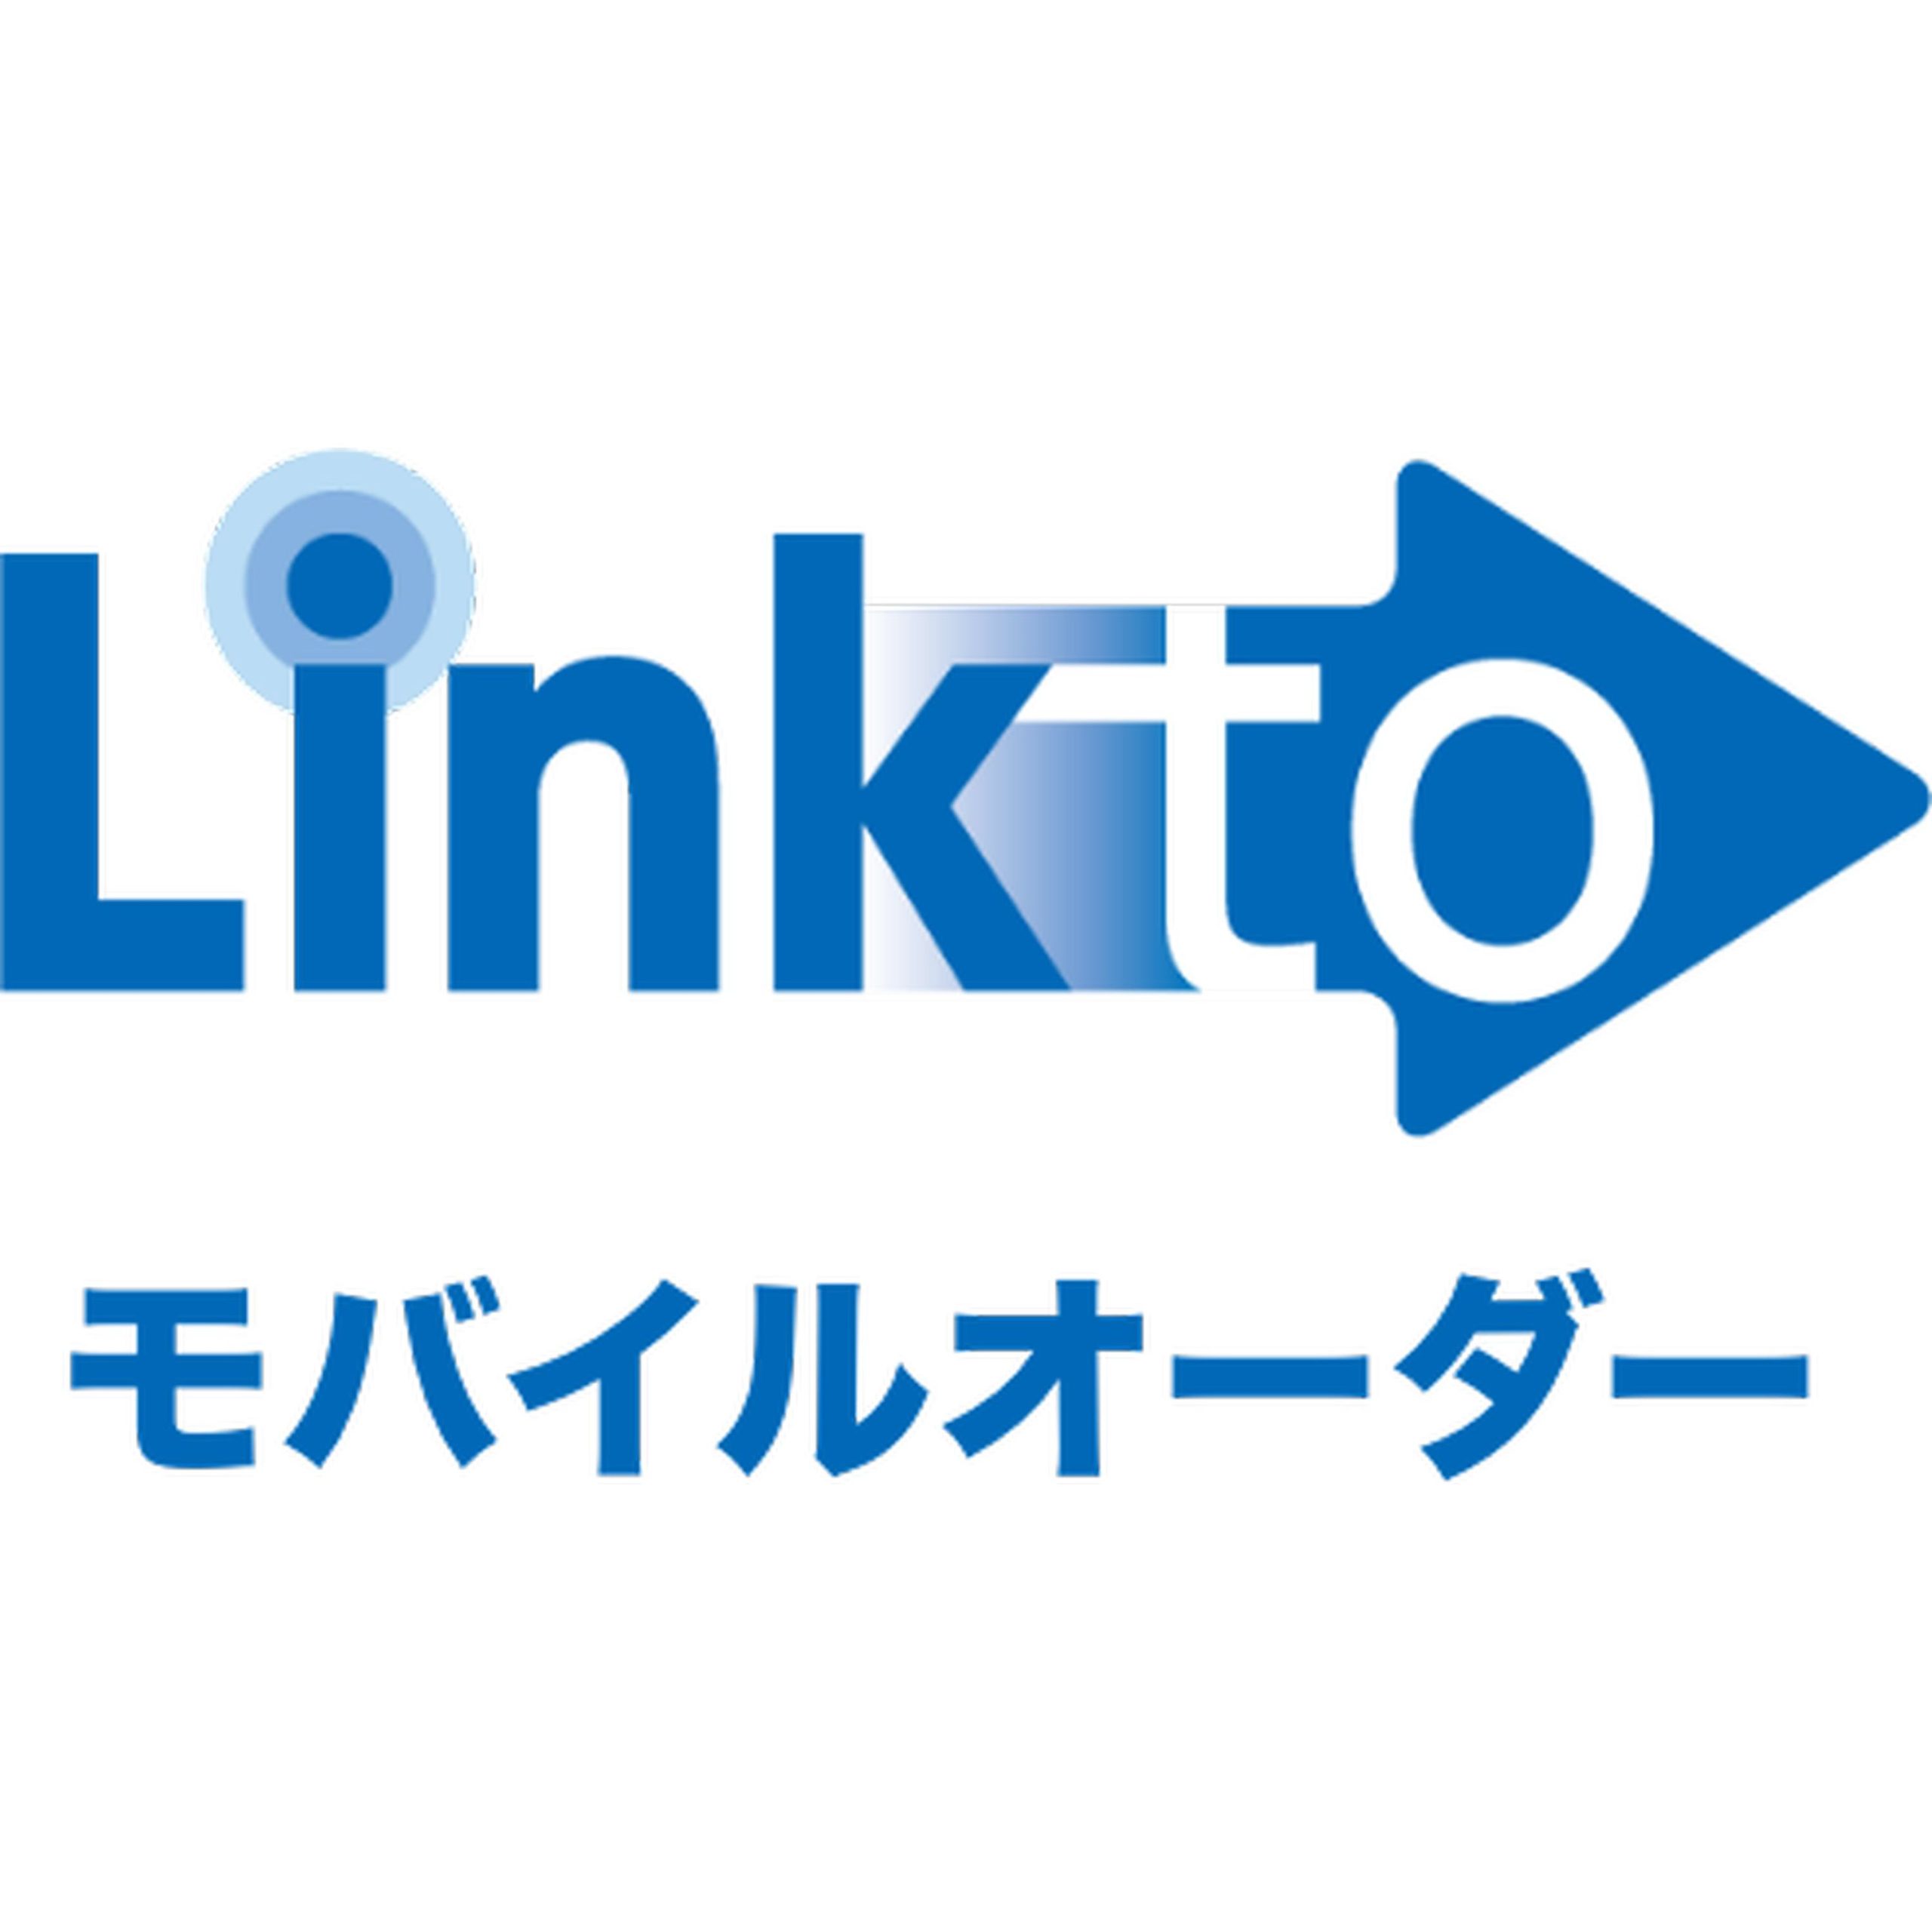 Linkto/モバイルオーダー